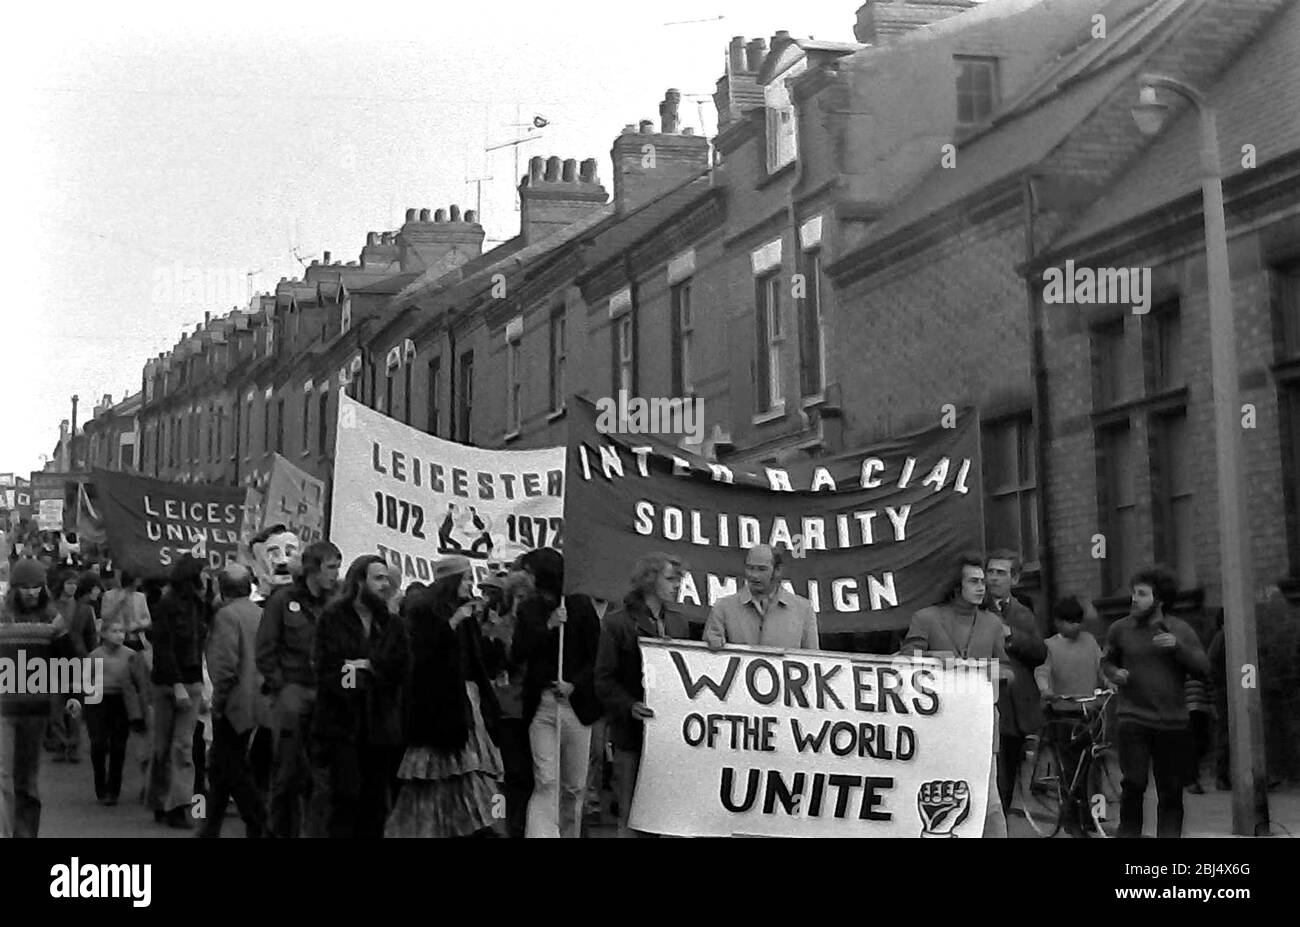 Des manifestants portant des banderoles, dont une qui dit: 'Worker of the World Unite', prennent part à une manifestation contre le racisme à Leicester, Angleterre, Royaume-Uni, Iles britanniques, en 1972. Banque D'Images